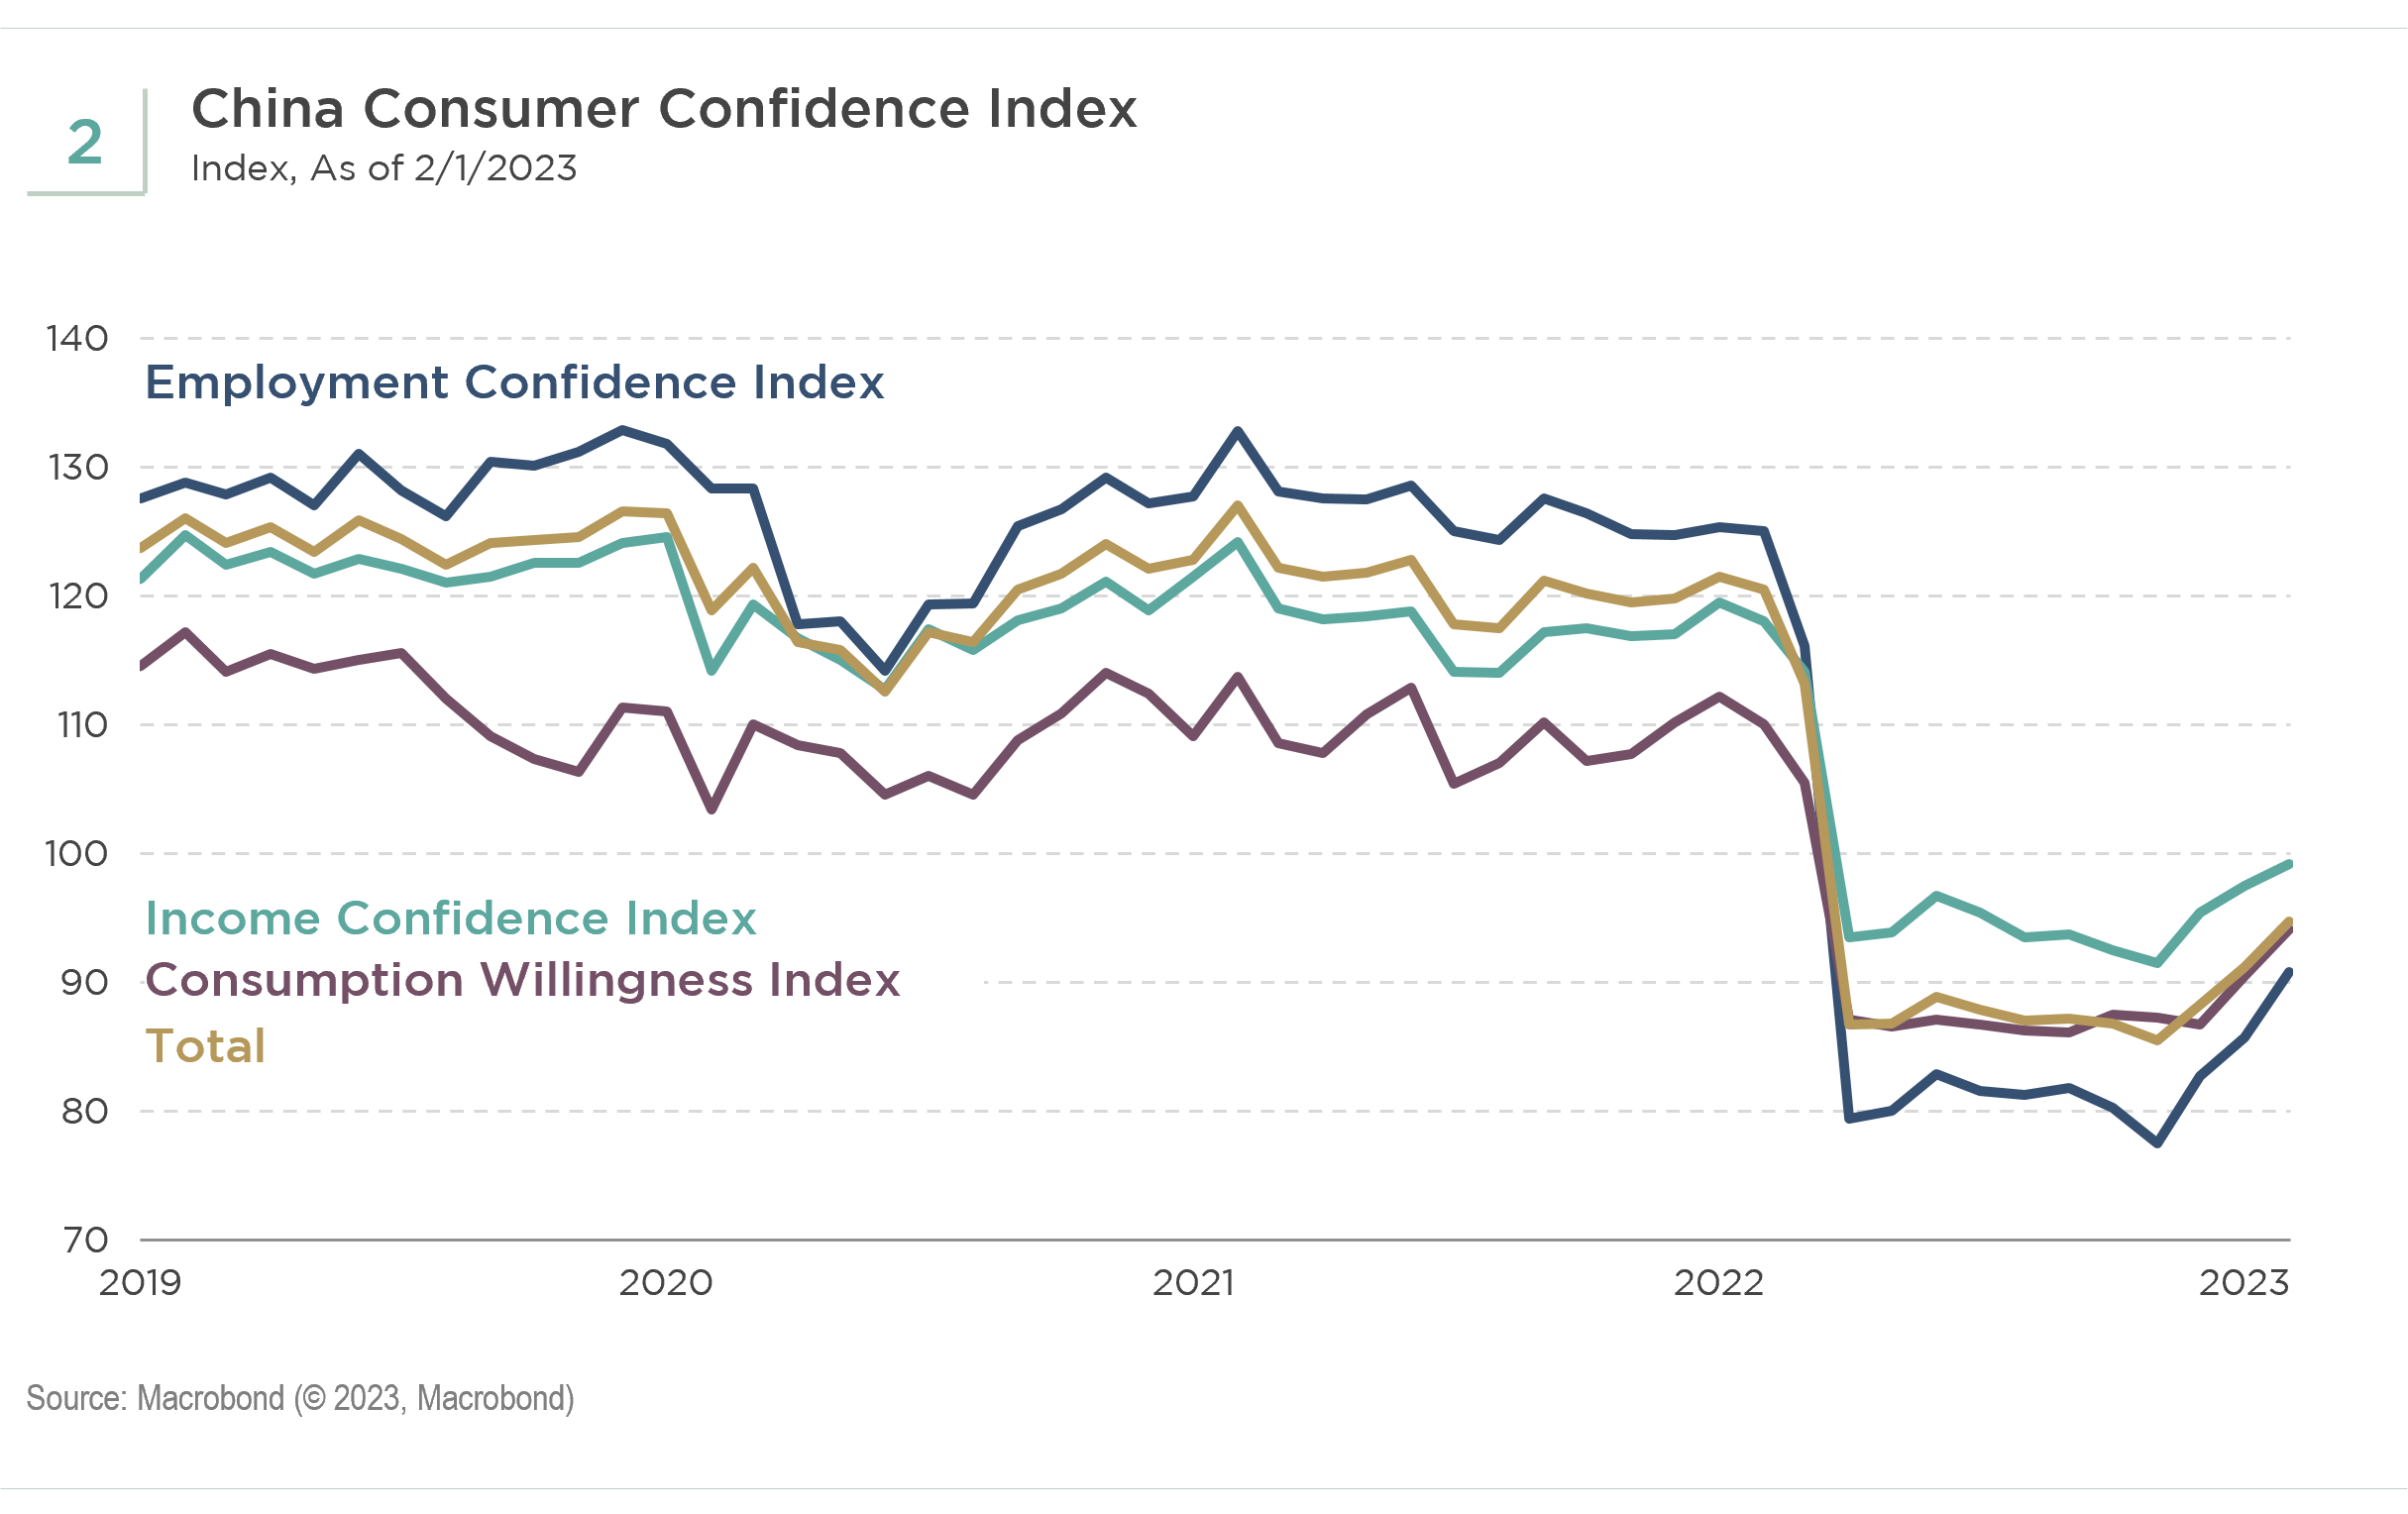 Exhibit 2: China Consumer Confidence Index